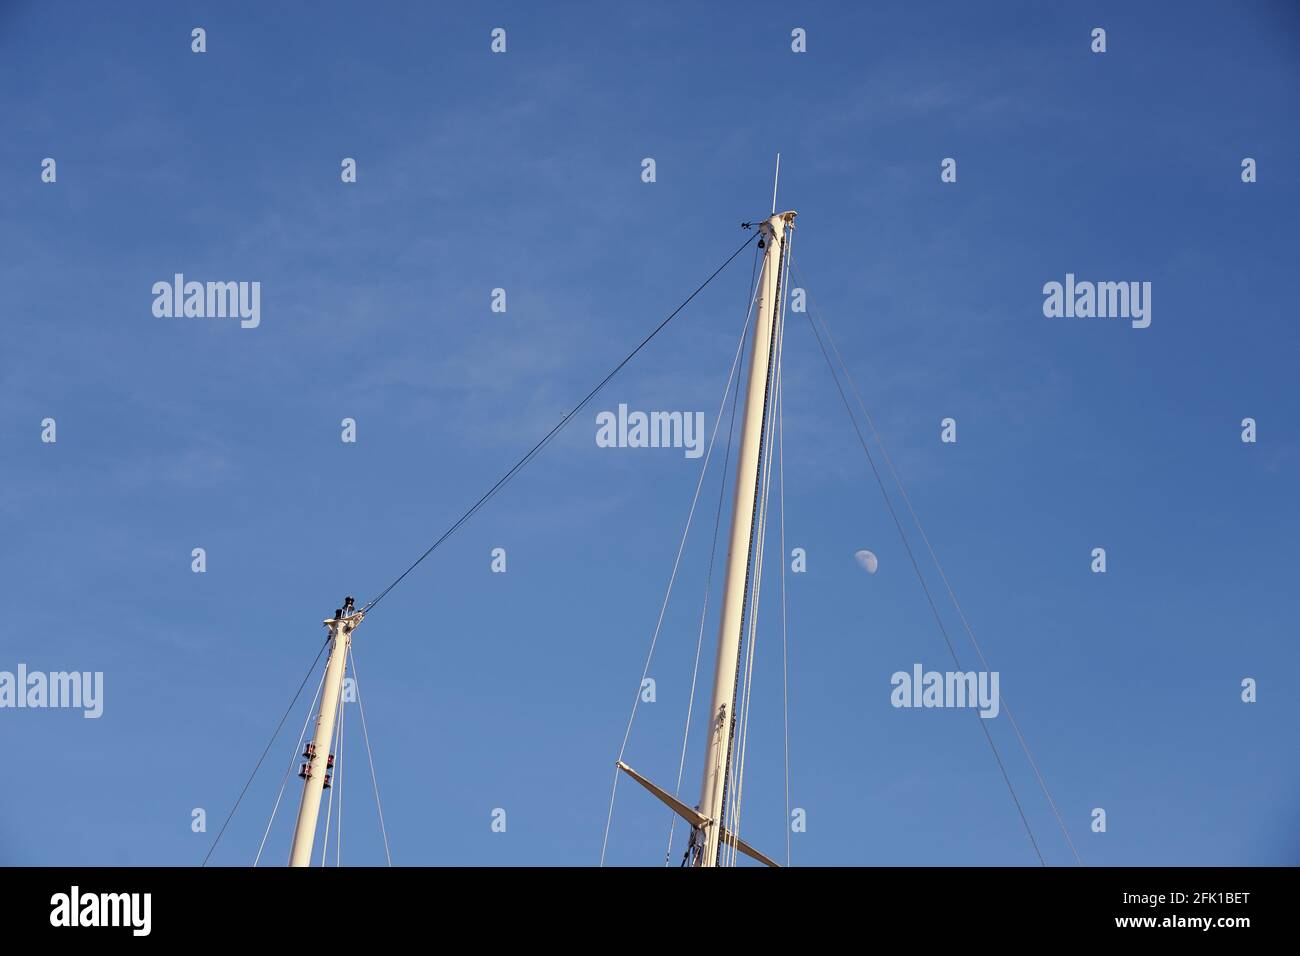 Les mâts du yacht contre le ciel bleu avec la lune. Banque D'Images